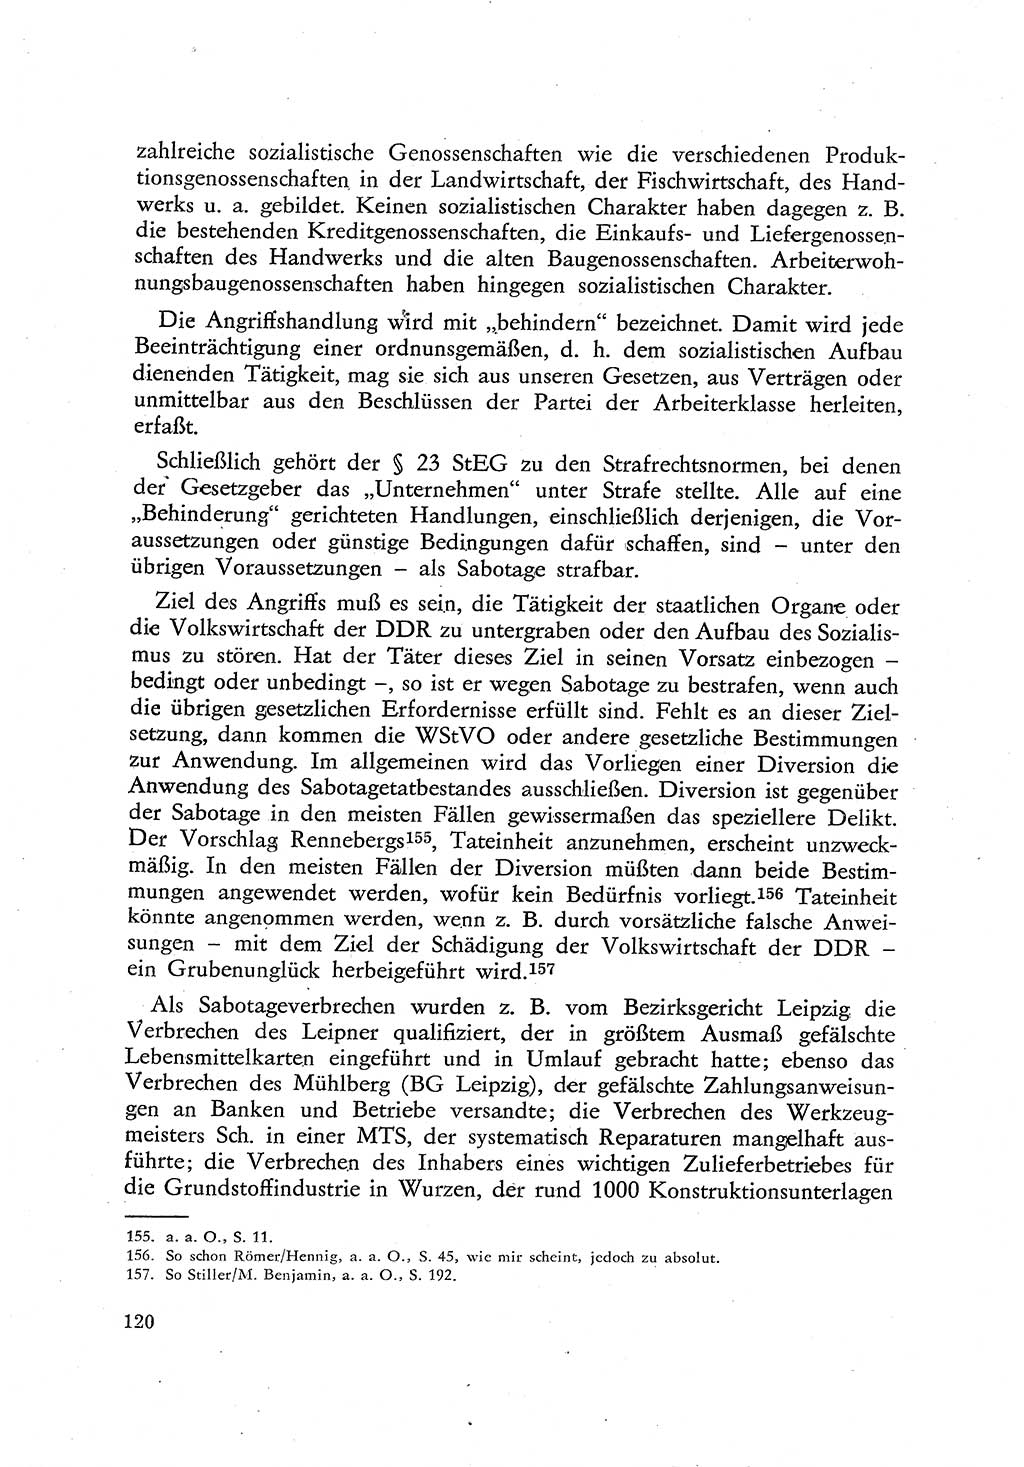 Beiträge zum Strafrecht [Deutsche Demokratische Republik (DDR)], Staatsverbrechen 1959, Seite 120 (Beitr. Strafr. DDR St.-Verbr. 1959, S. 120)